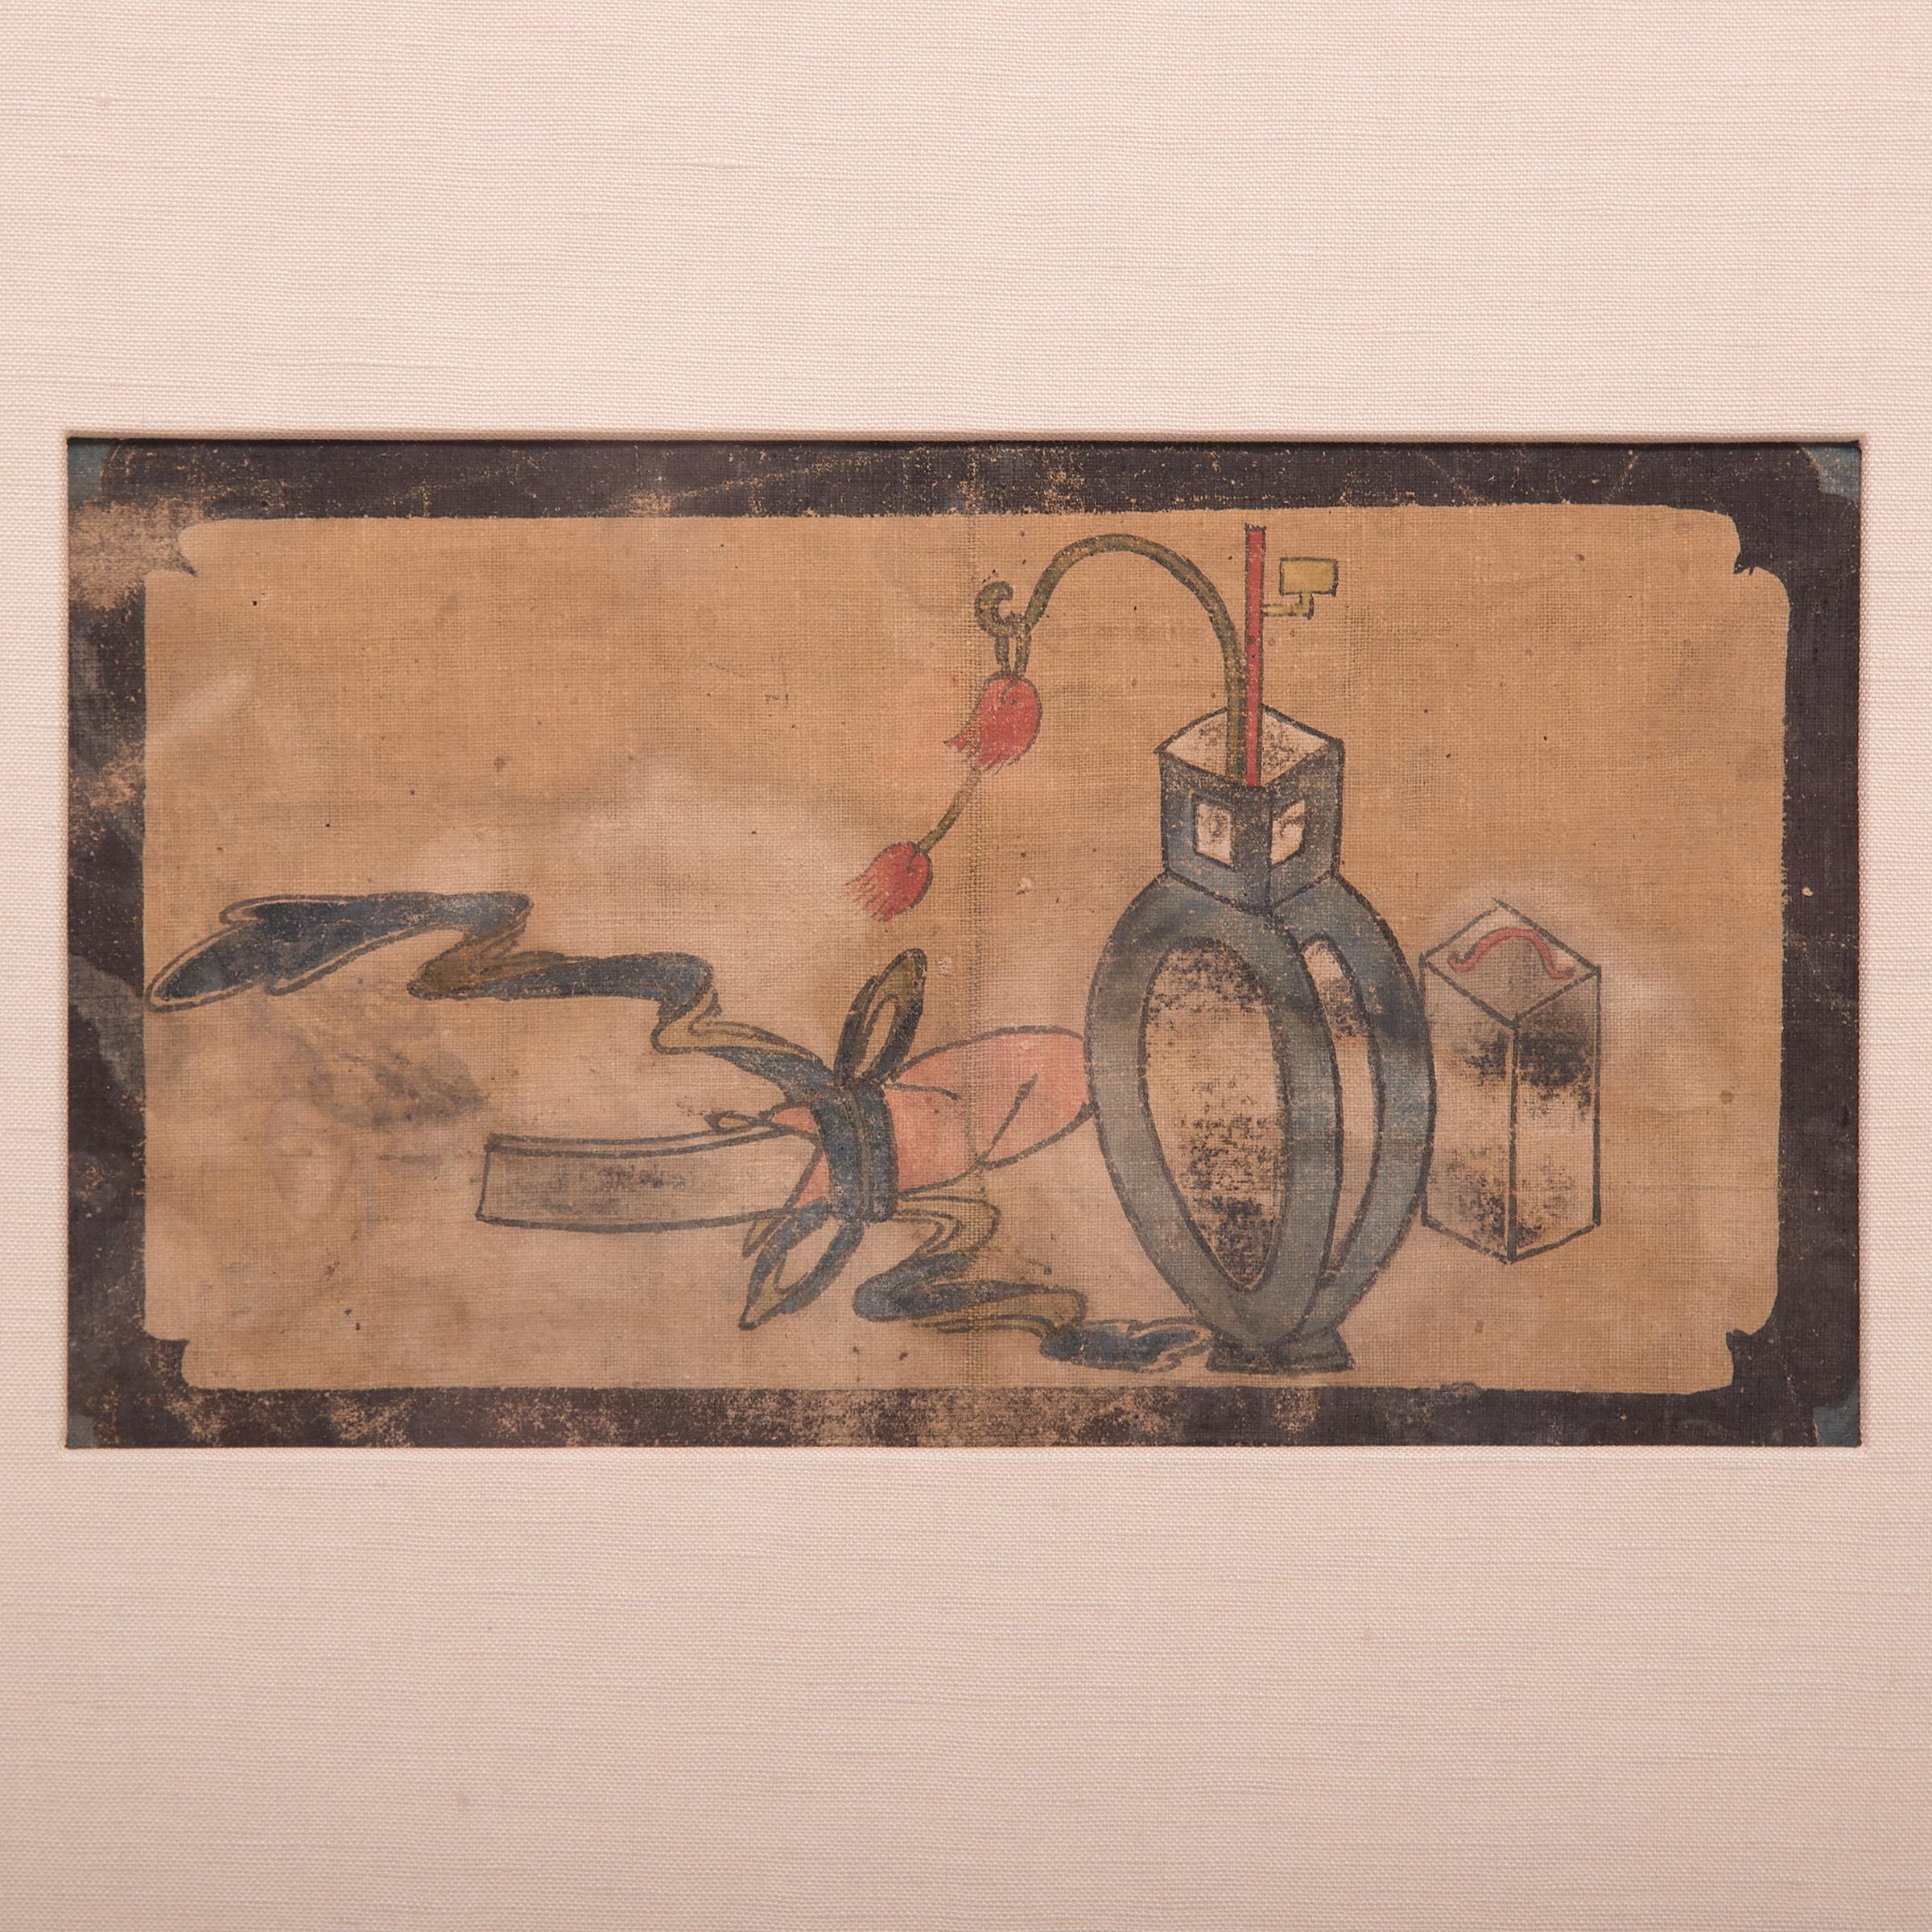 Un rouleau et une petite lanterne représentés dans cette peinture du XIXe siècle suggèrent la notion romantique d'un lettré chinois peignant le soir. Remarquablement vivante, cette peinture faisait à l'origine partie d'une série de tableaux rendant